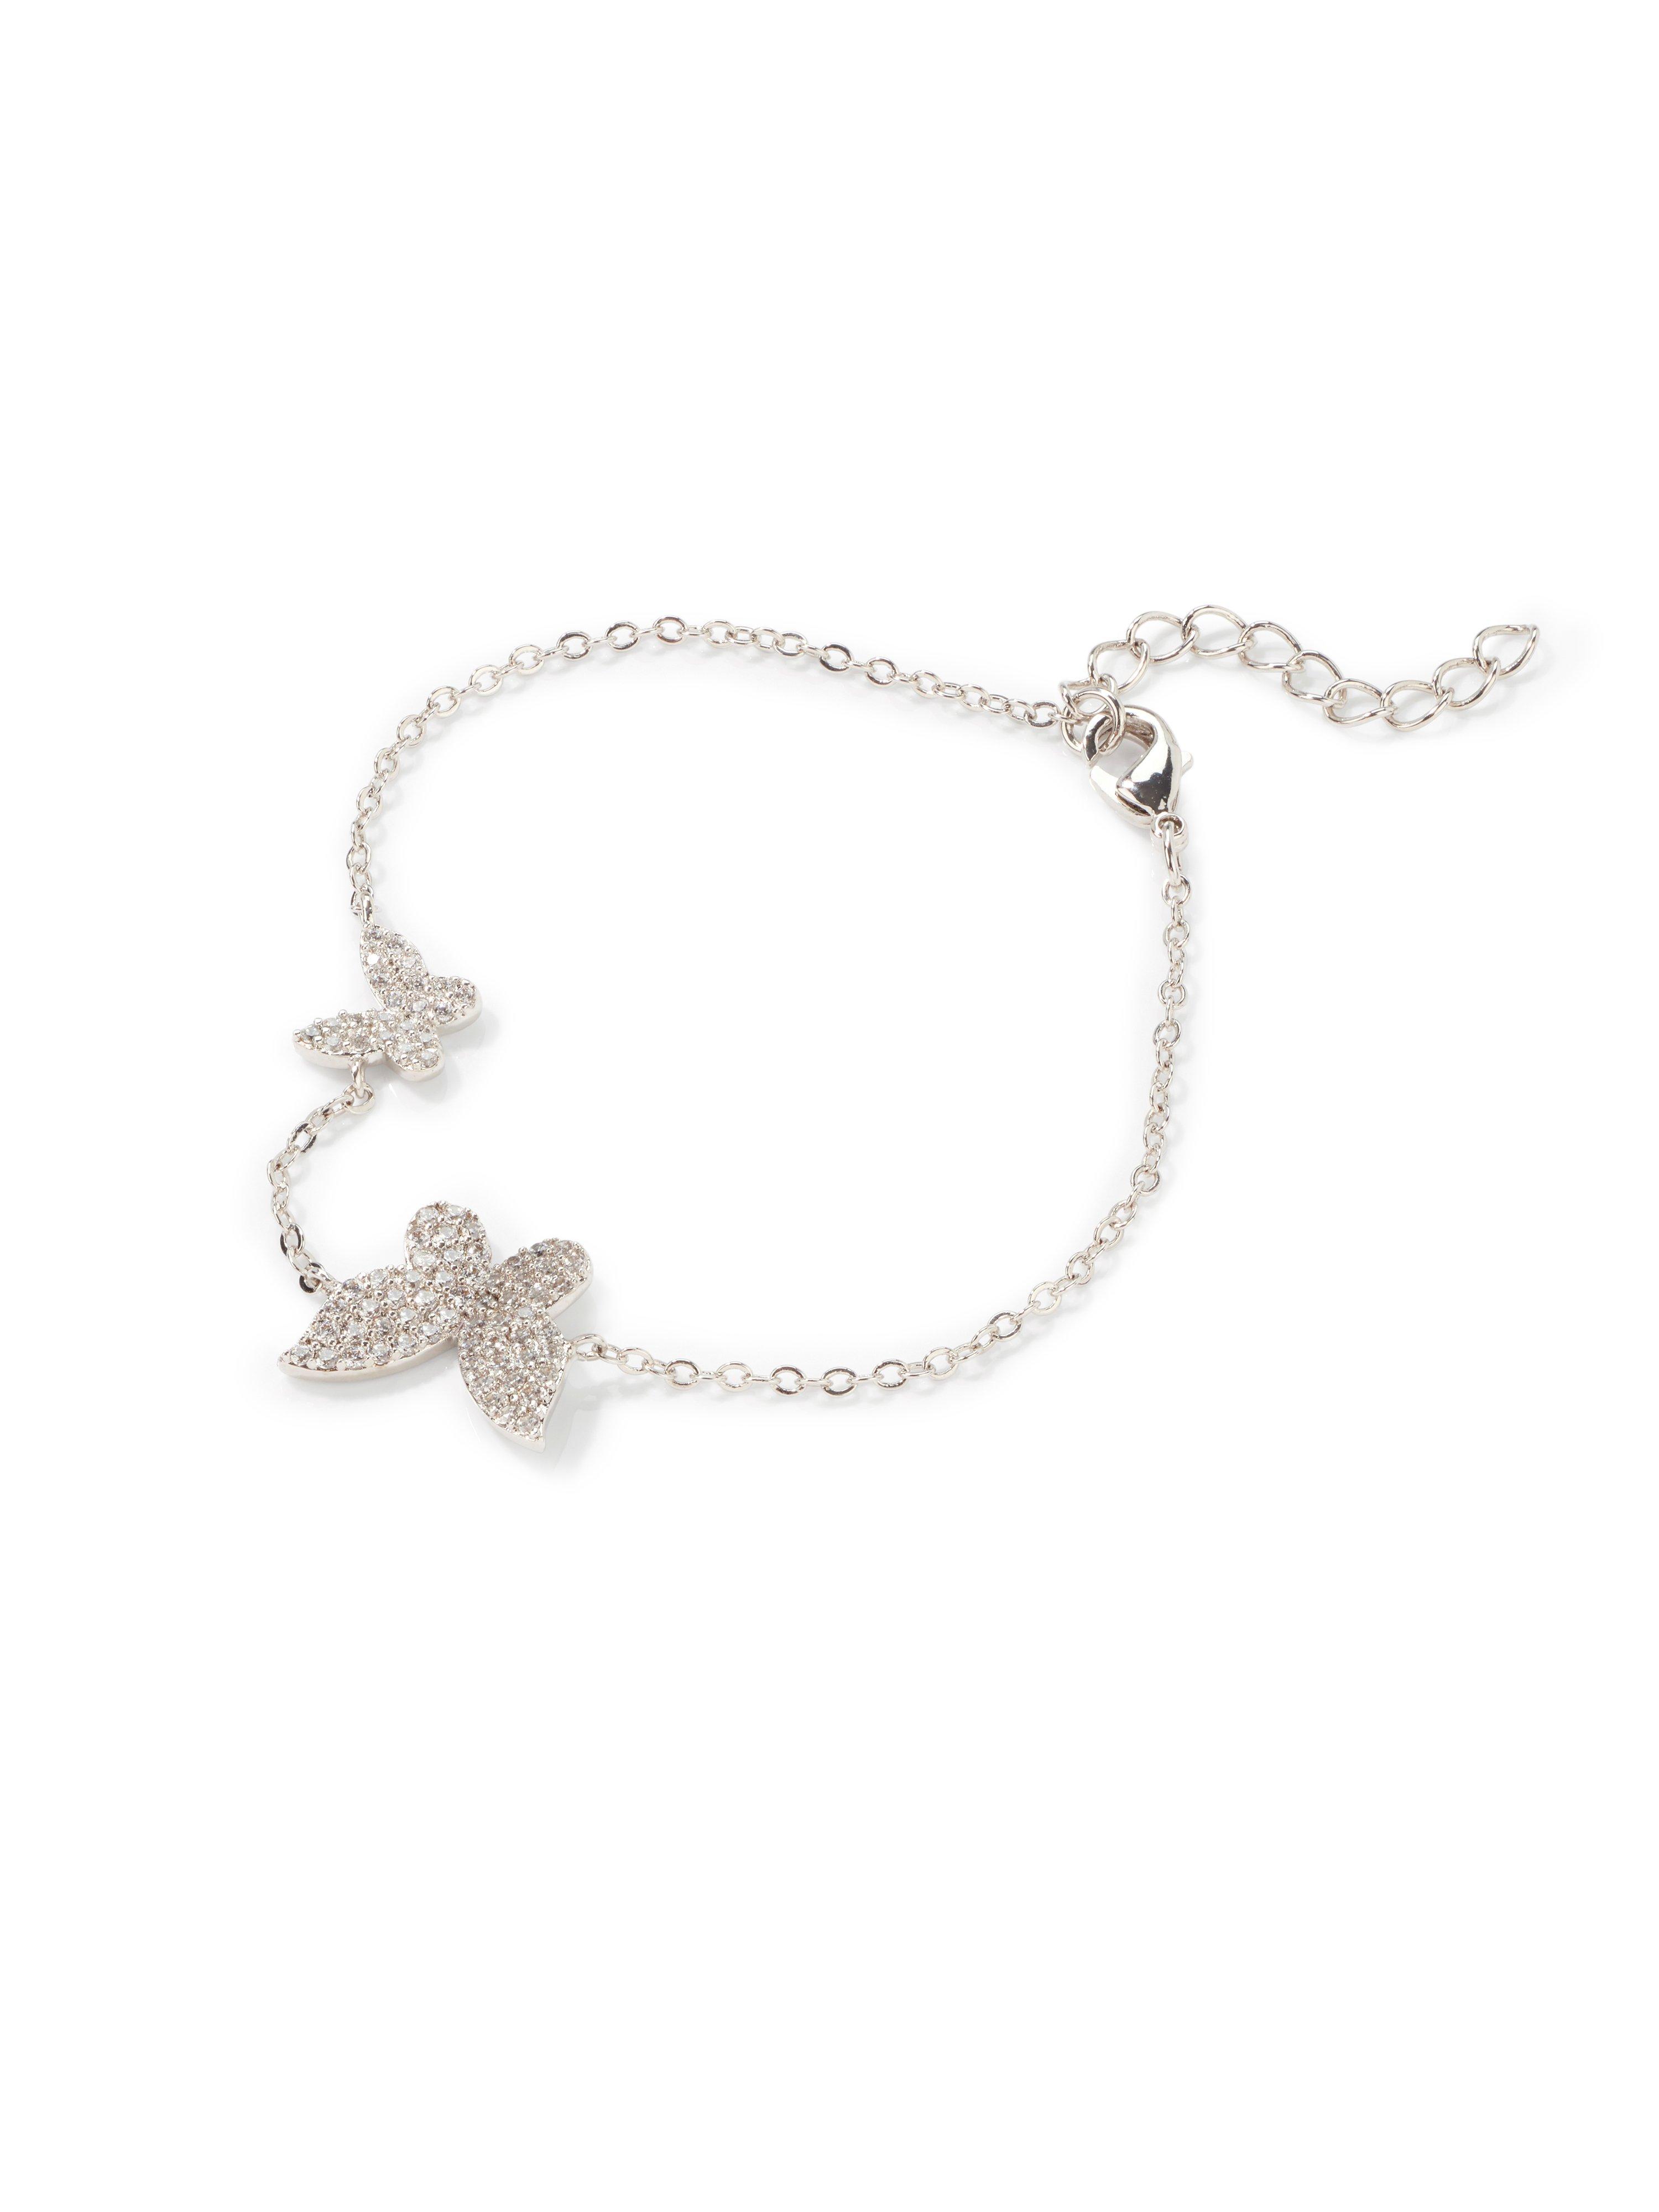 Image of Bracelet 2 butterflies Lua Accessoires silver